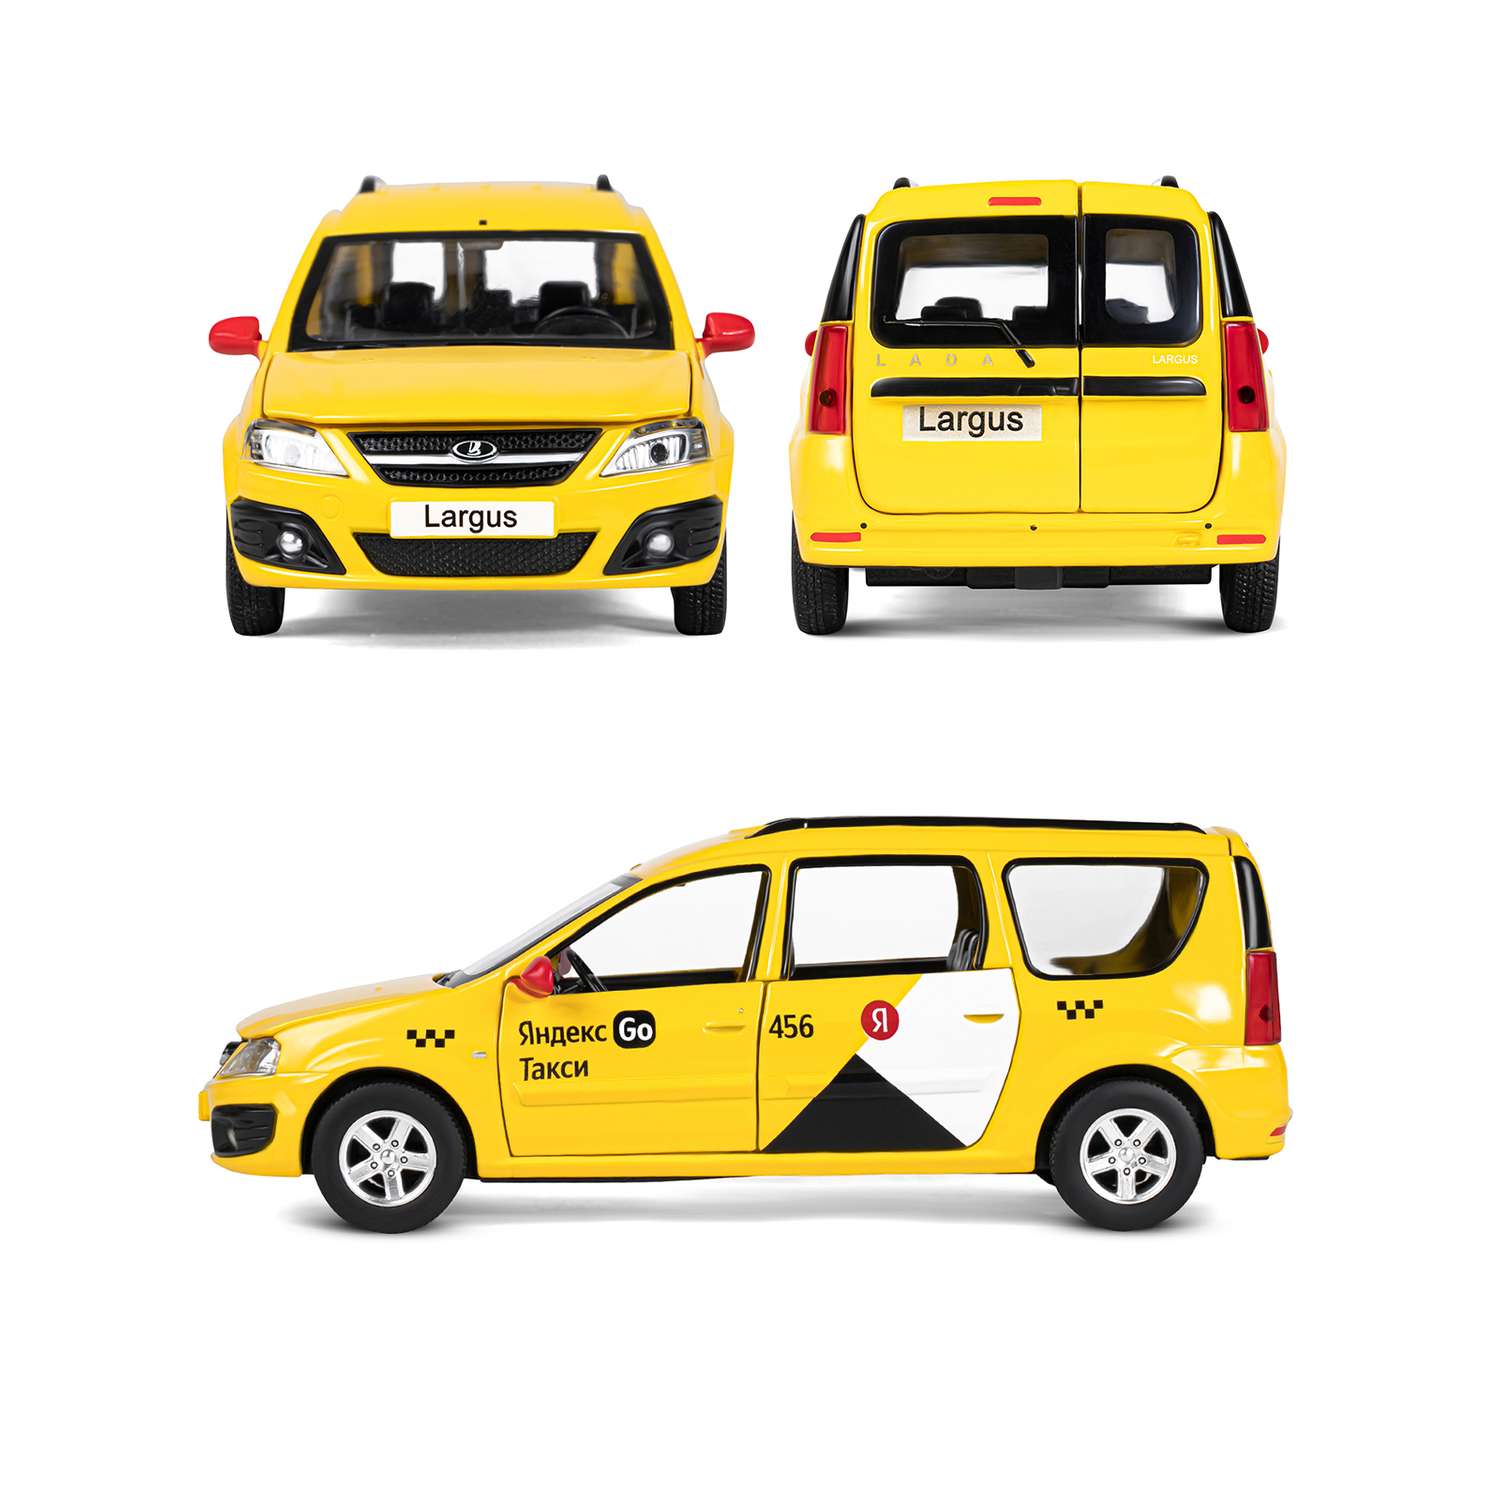 Машинка металлическая Яндекс GO игрушка детская LADA LARGUS 1:24 желтый Озвучено Алисой JB1251481 - фото 5